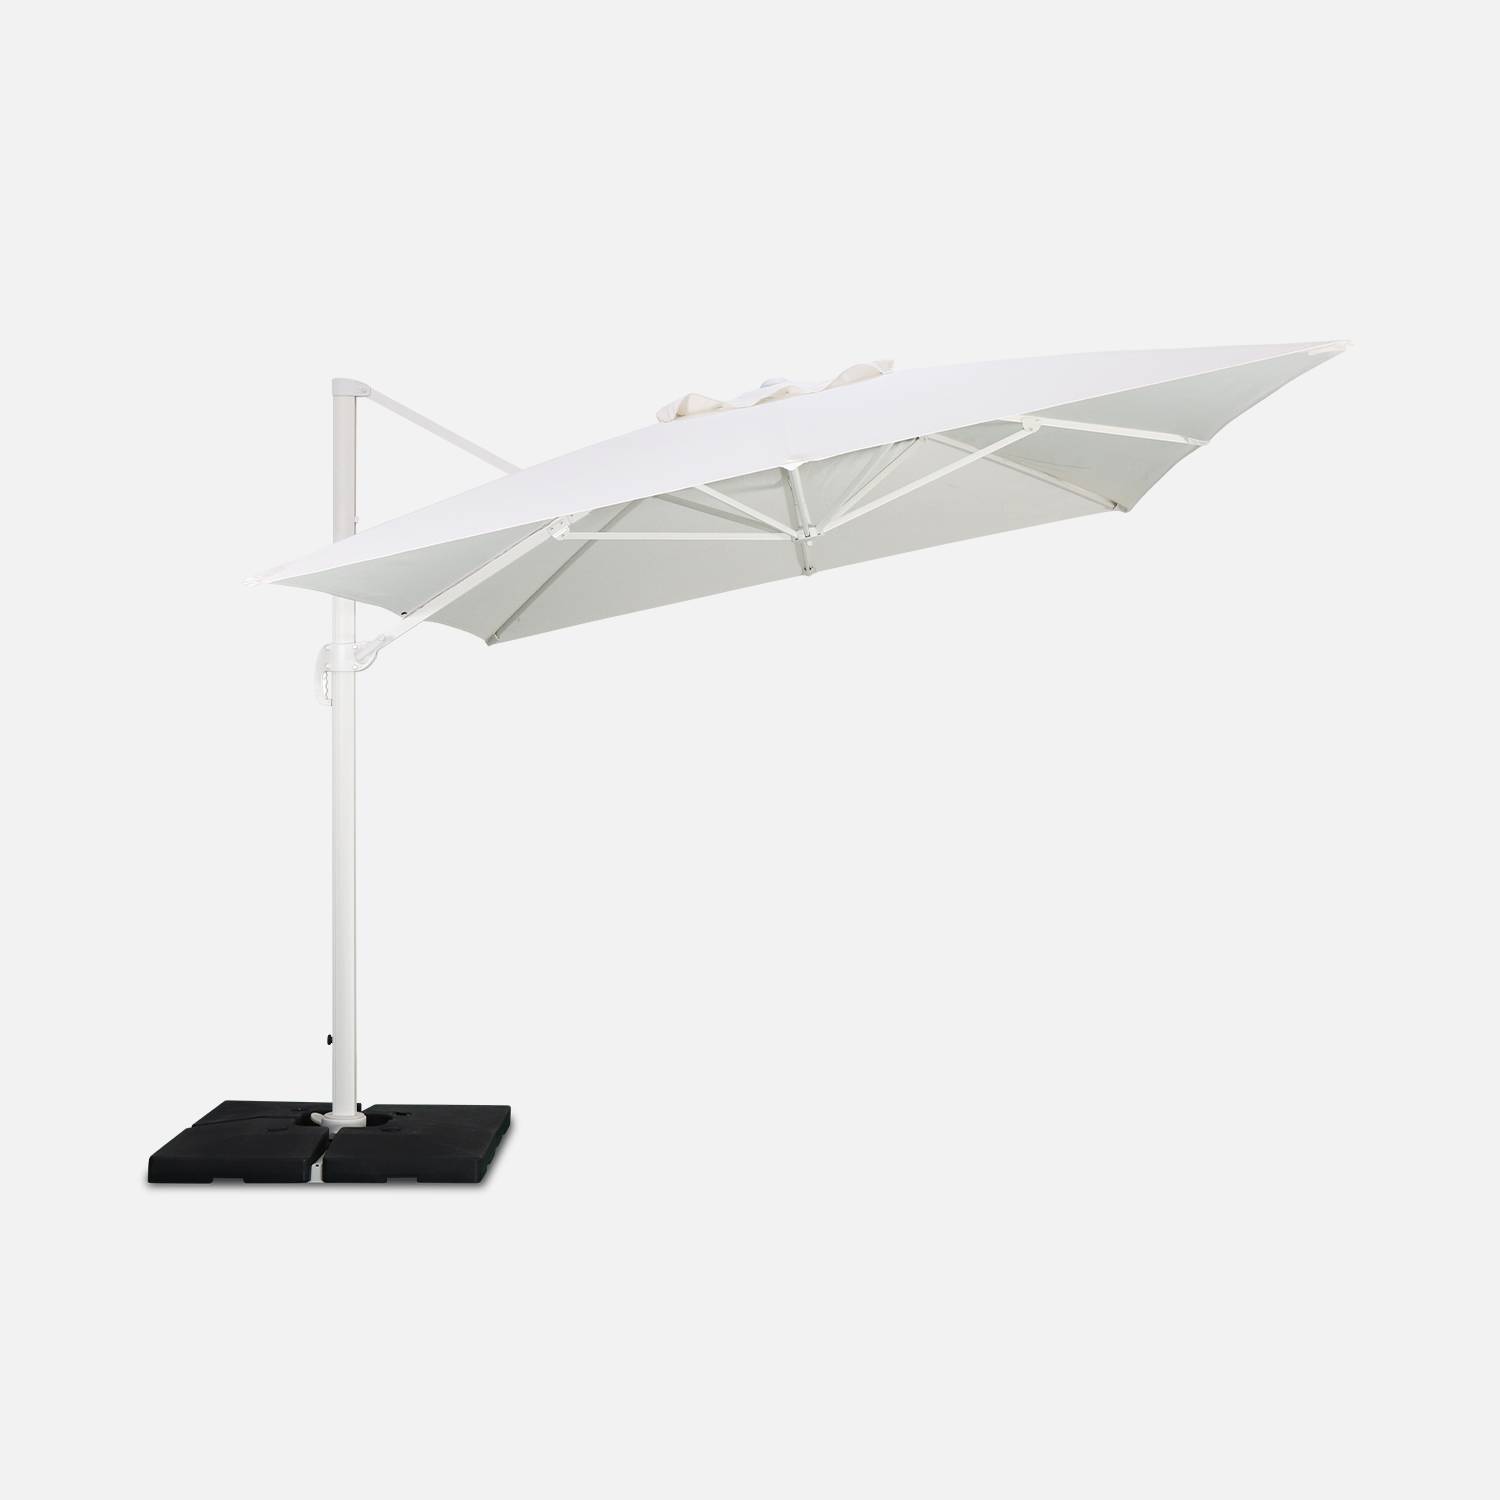 Hoogwaardige 3 x 4m vierkante parasol- St. Jean de Luz  - Wit - Kantelbare, opvouwbare en 360° draaibare zweefparasol Photo6